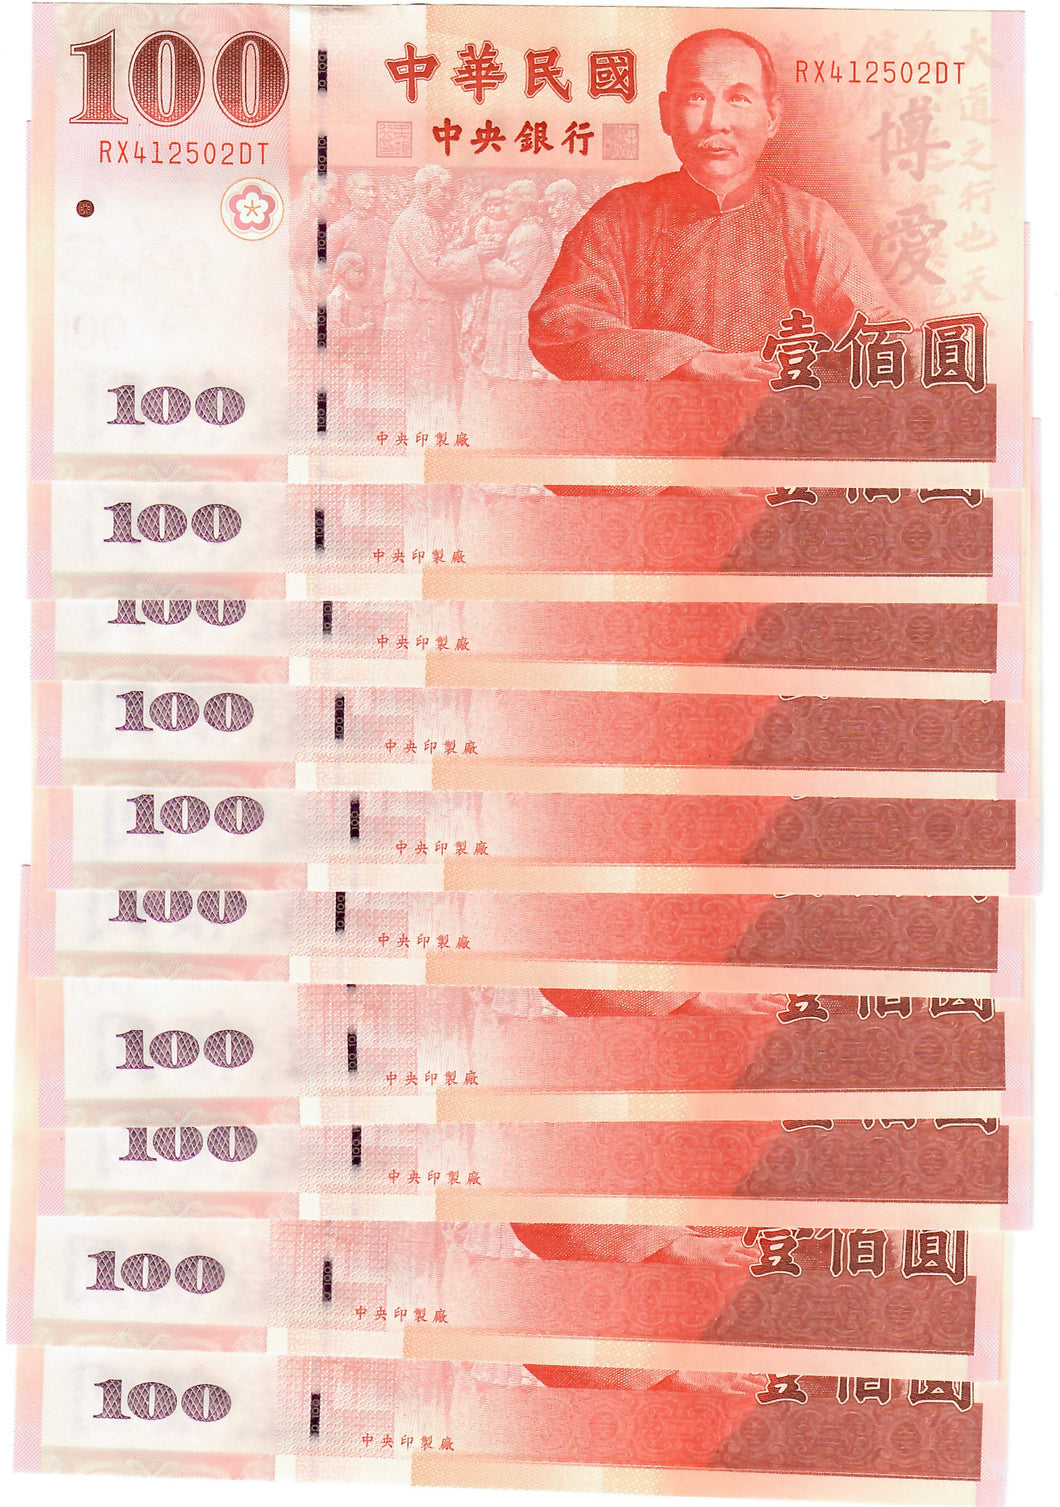 Taiwan 10x 100 Dollars 2001 UNC